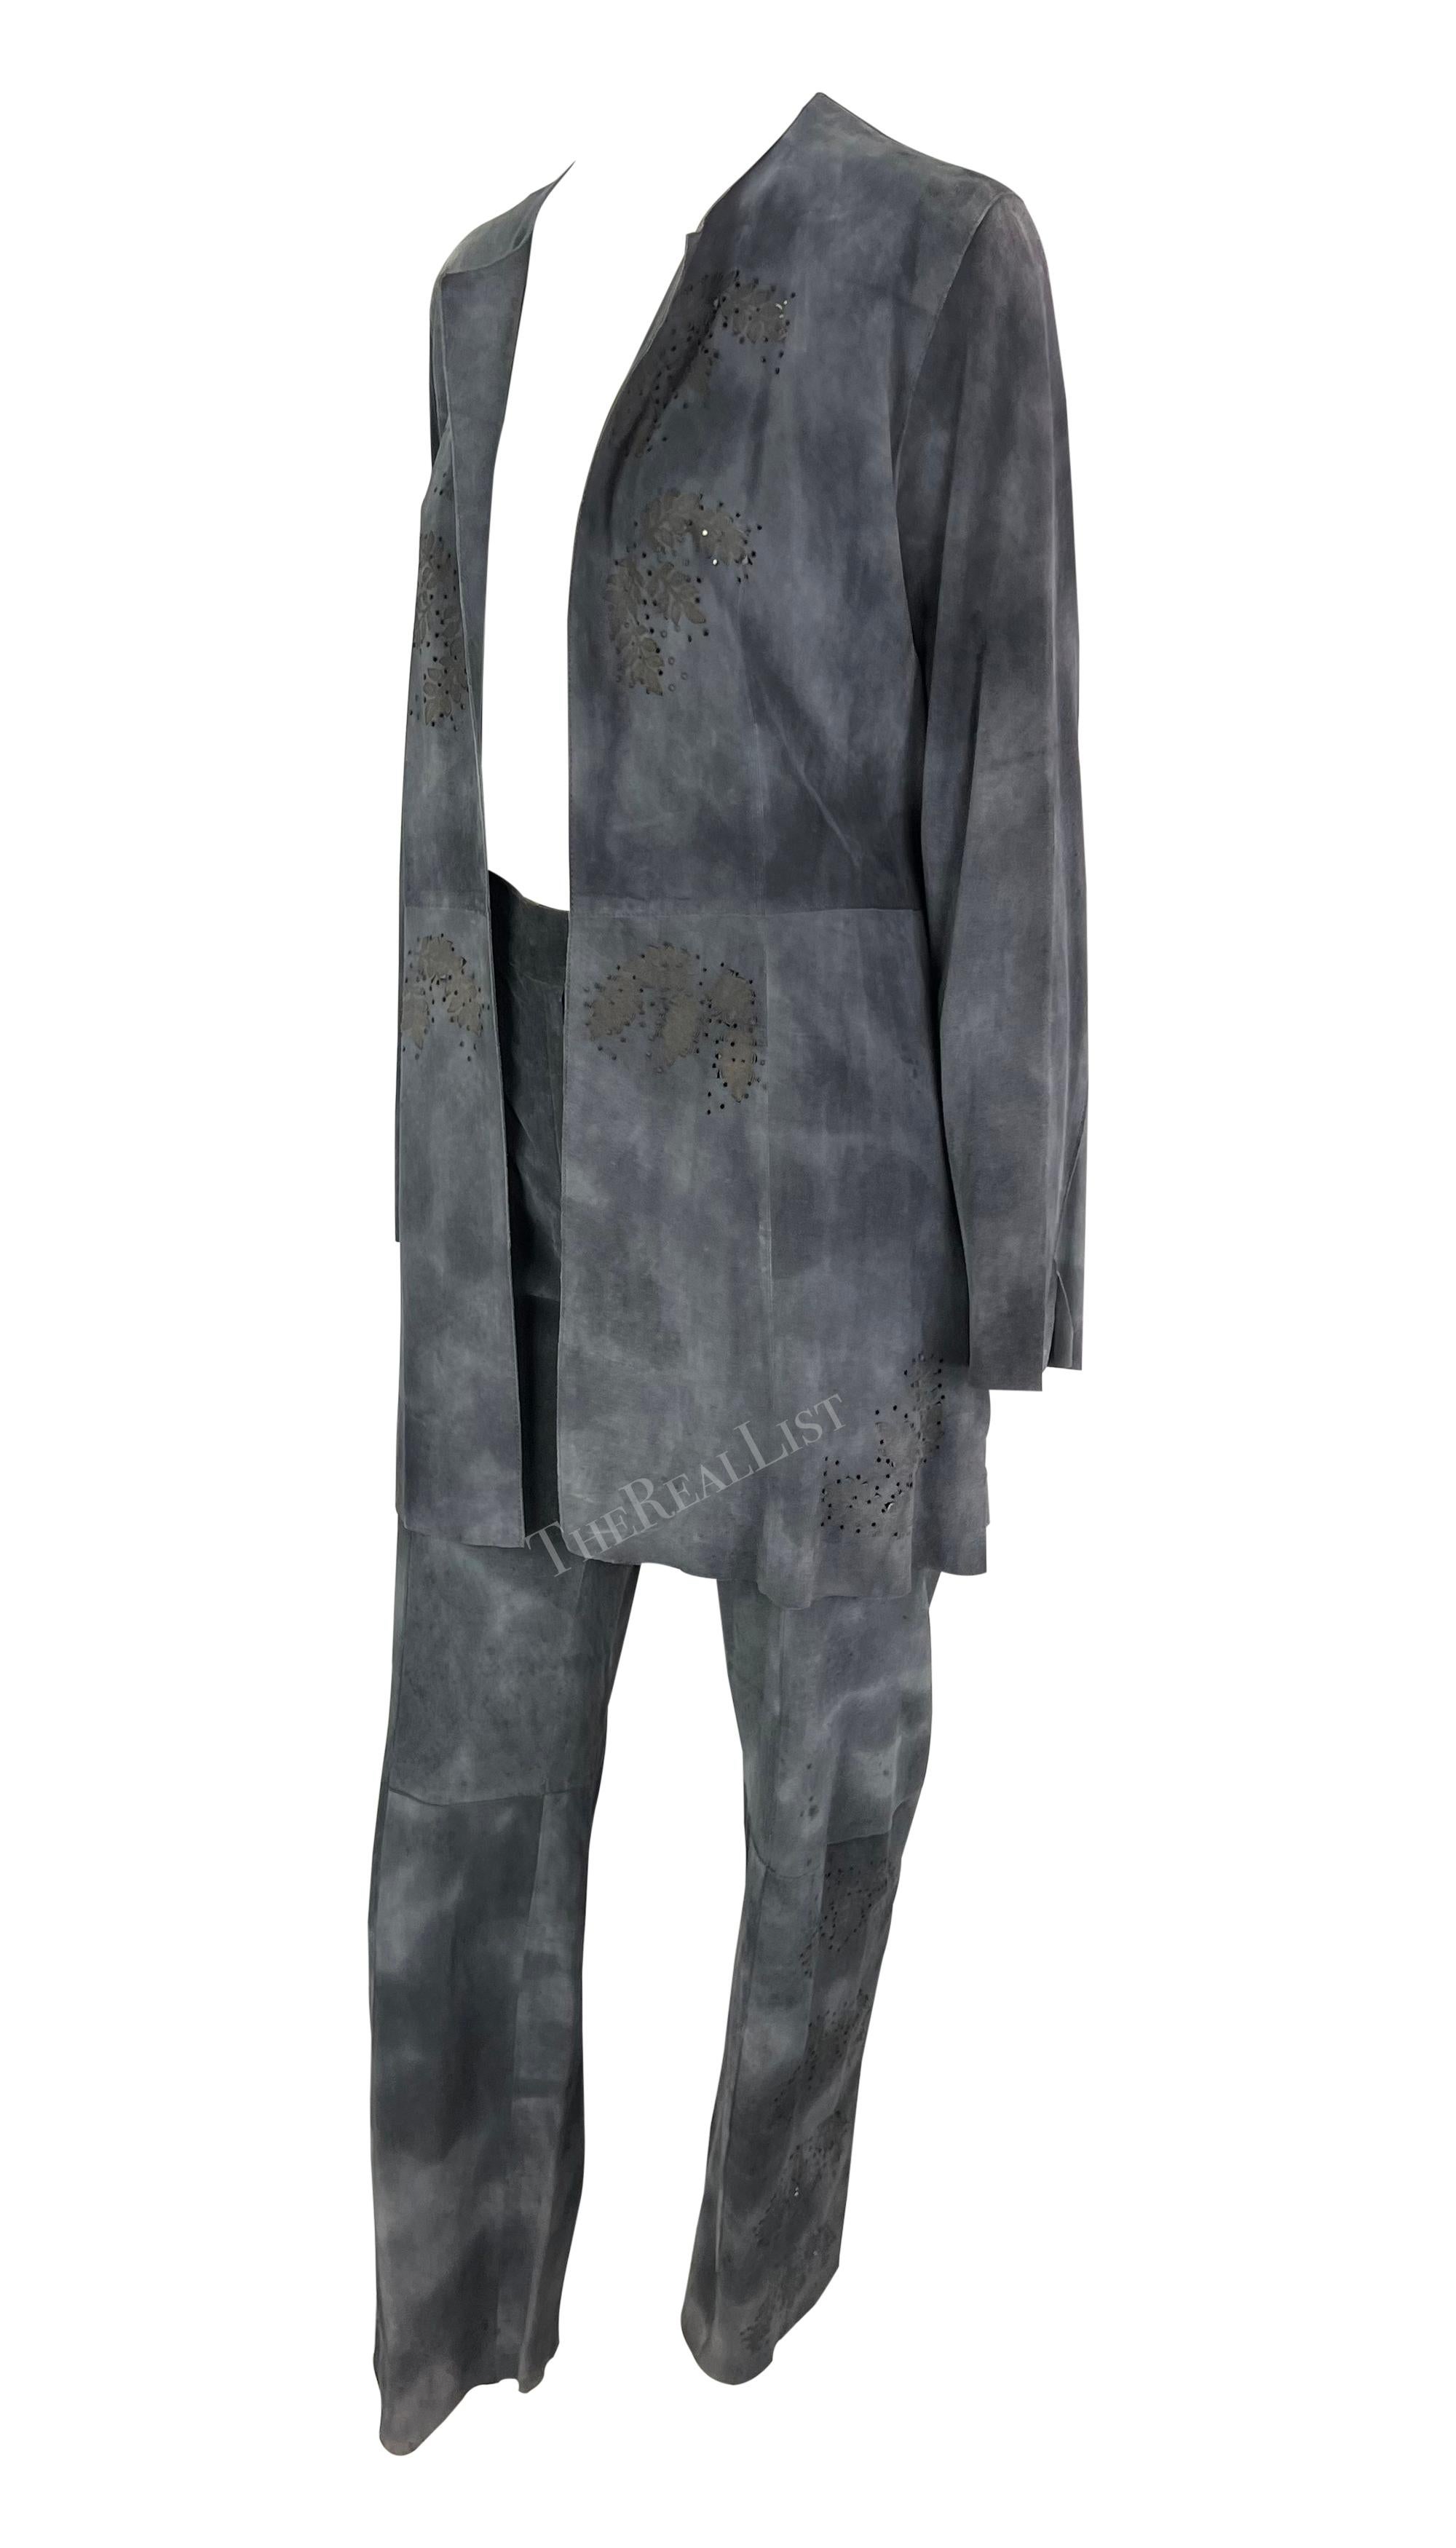 Présentation d'un ensemble chic de pantalons en daim bleu-gris Fendi, dessiné par Karl Lagerfeld. Datant de la fin des années 1990, cet ensemble se compose d'un pantalon flare et d'une veste ouverte, tous deux réalisés en daim volontairement usé